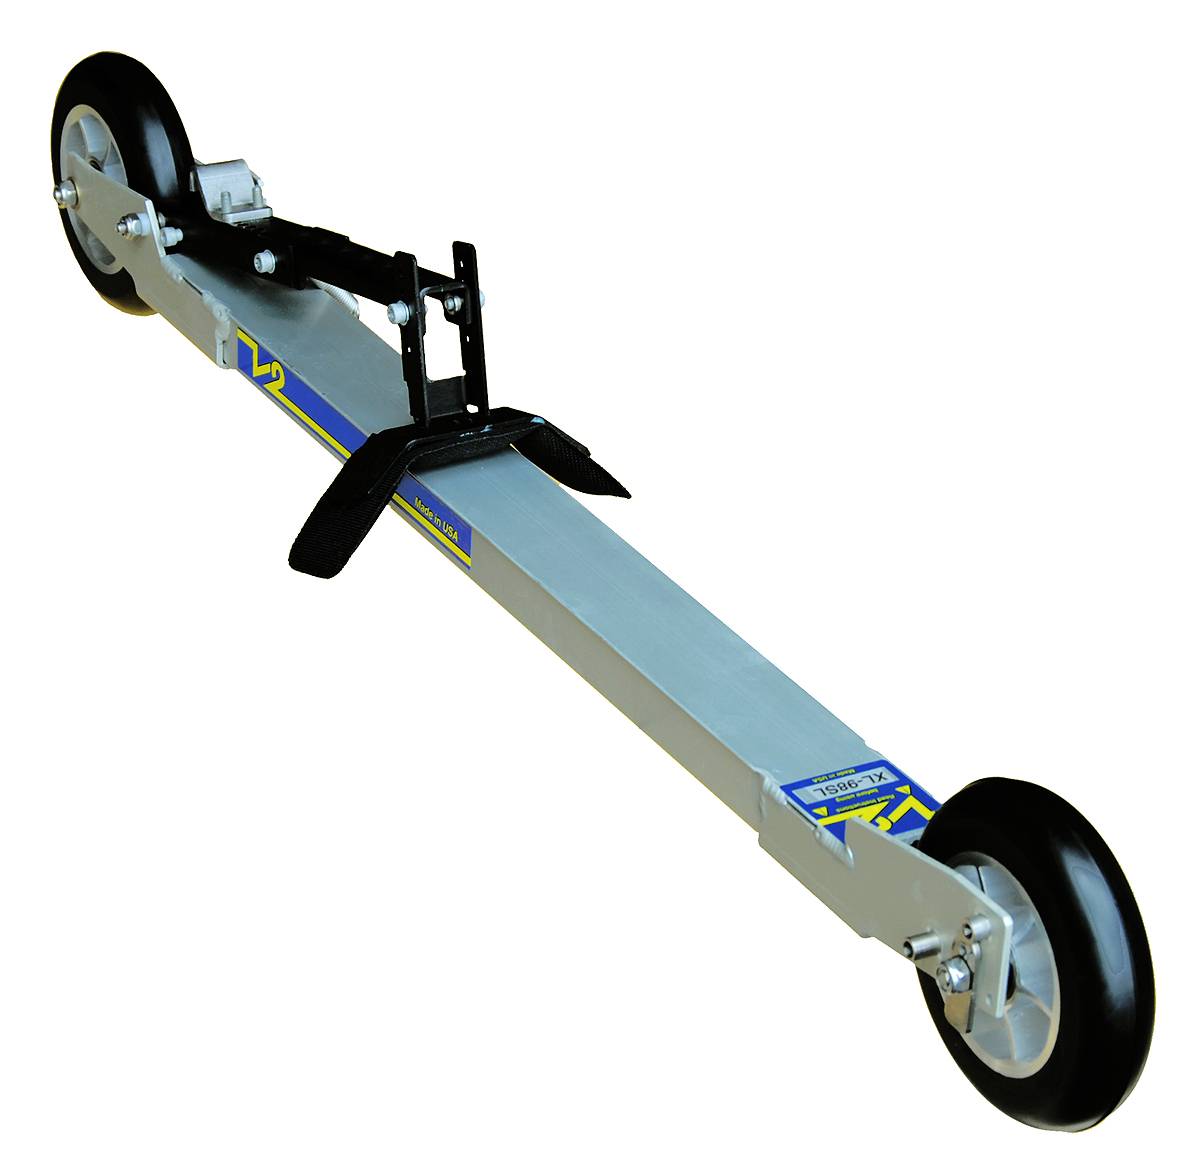 Недорогие коньковые лыжероллеры V2-XL98SL для асфальта. Платформа из алюминиевого сплава. Колесо 98х24мм. 